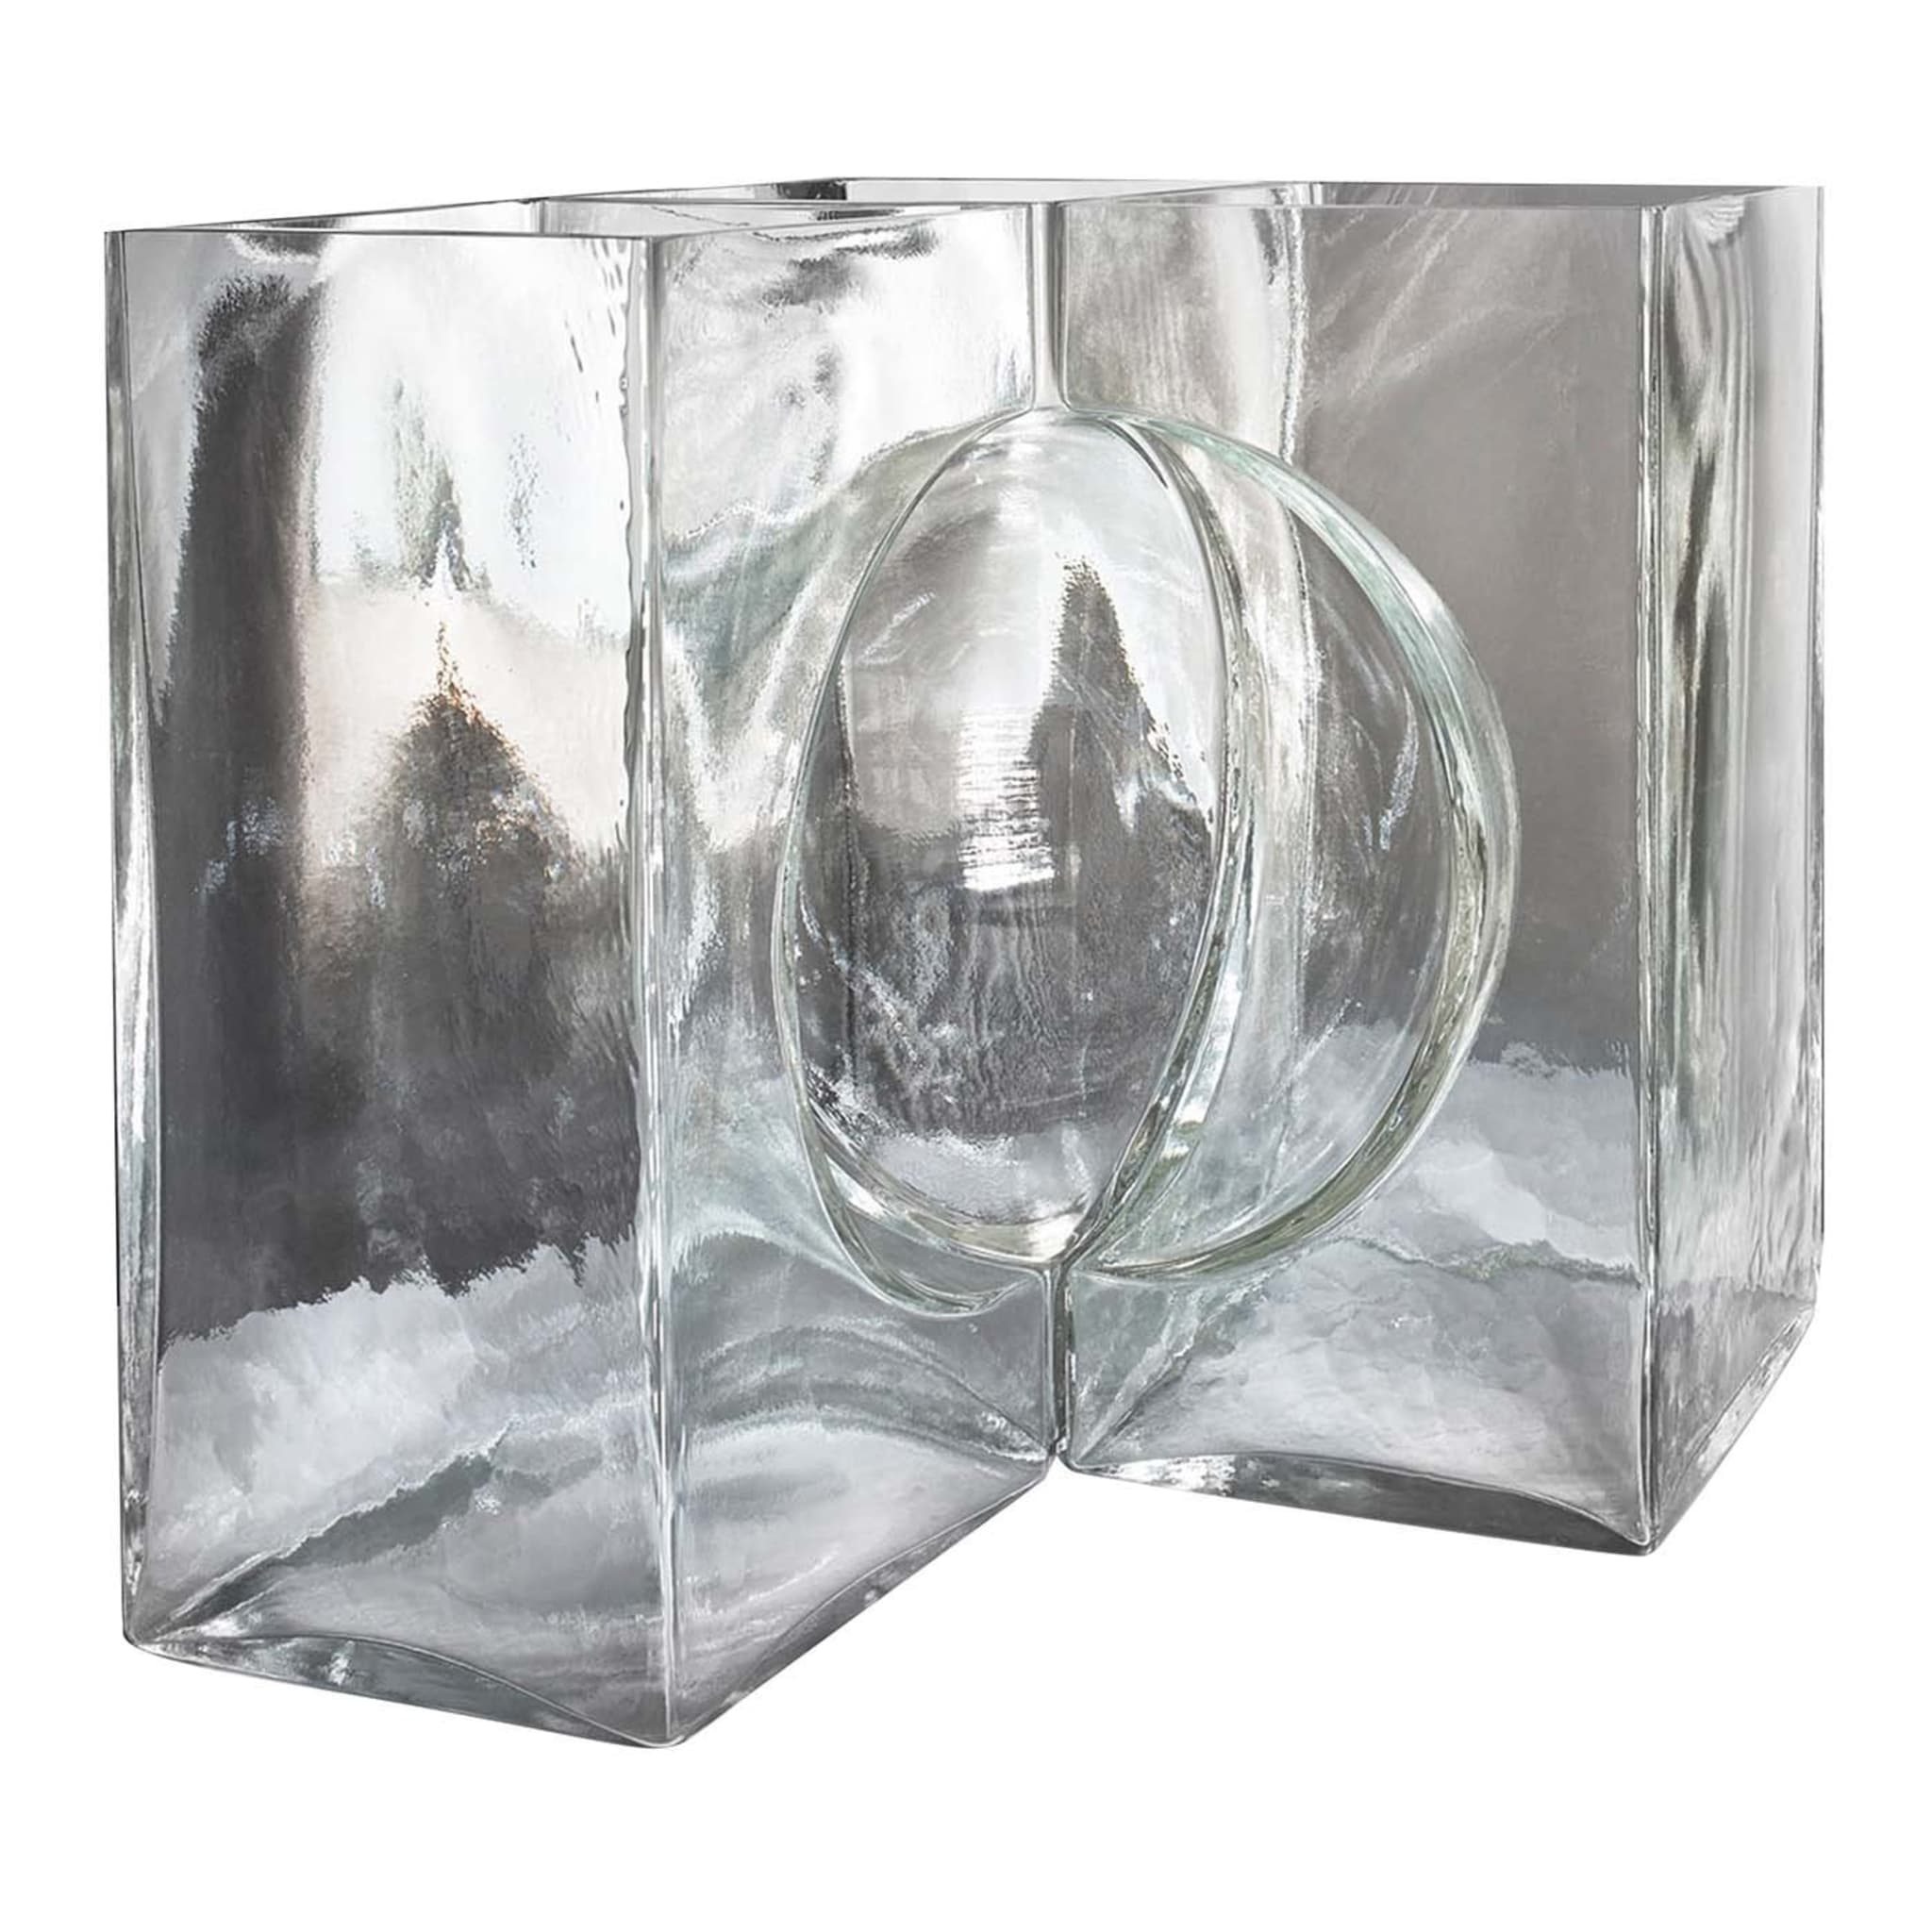 Ando Cosmos Crystal Sculpture by Tadao Ando - Main view